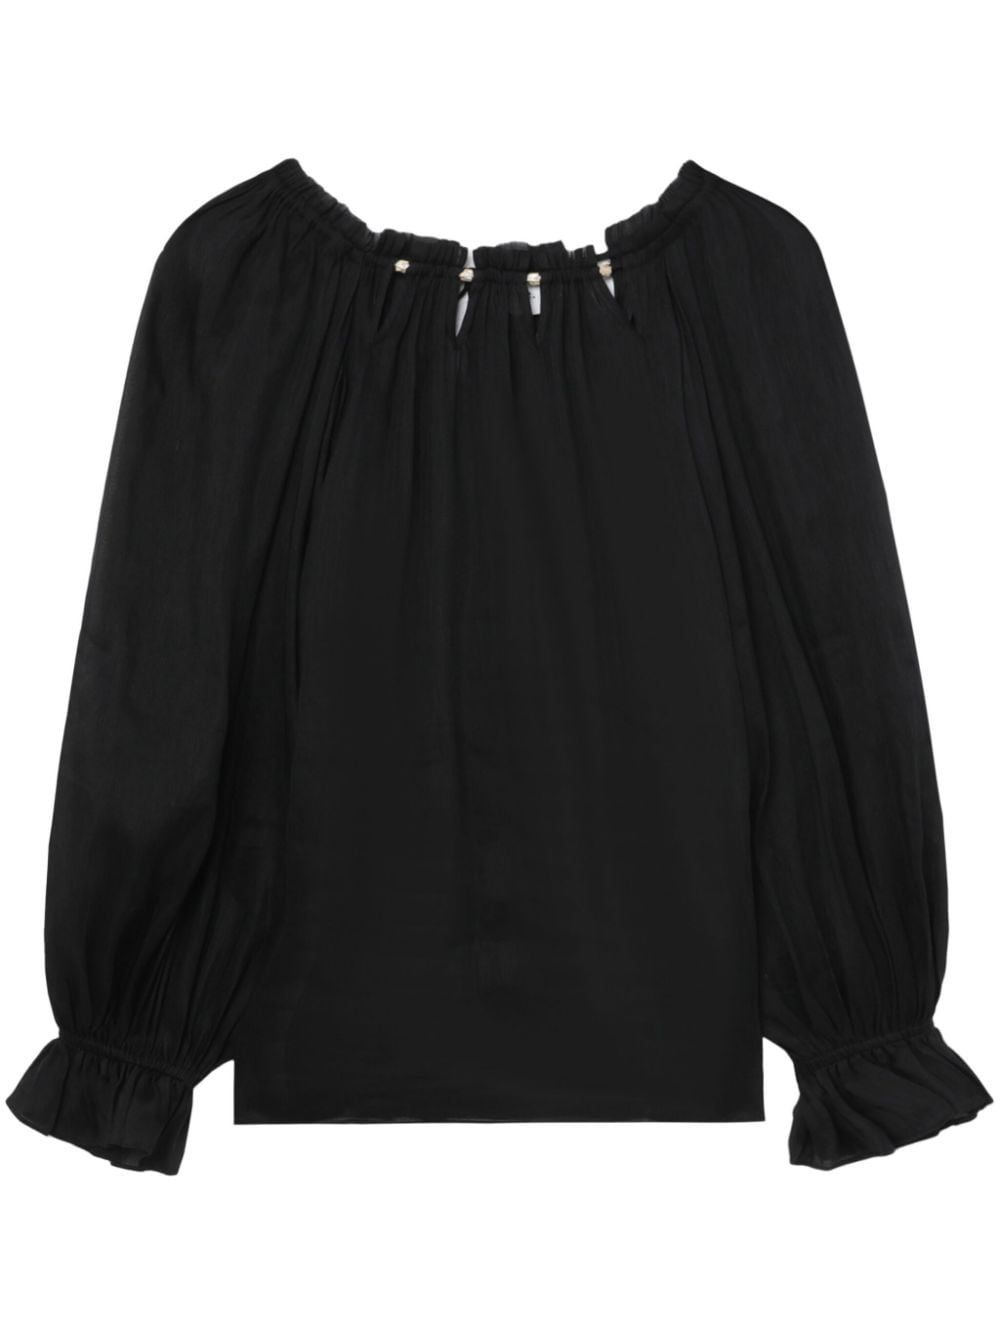 Charm Le Corsaire cut-out blouse